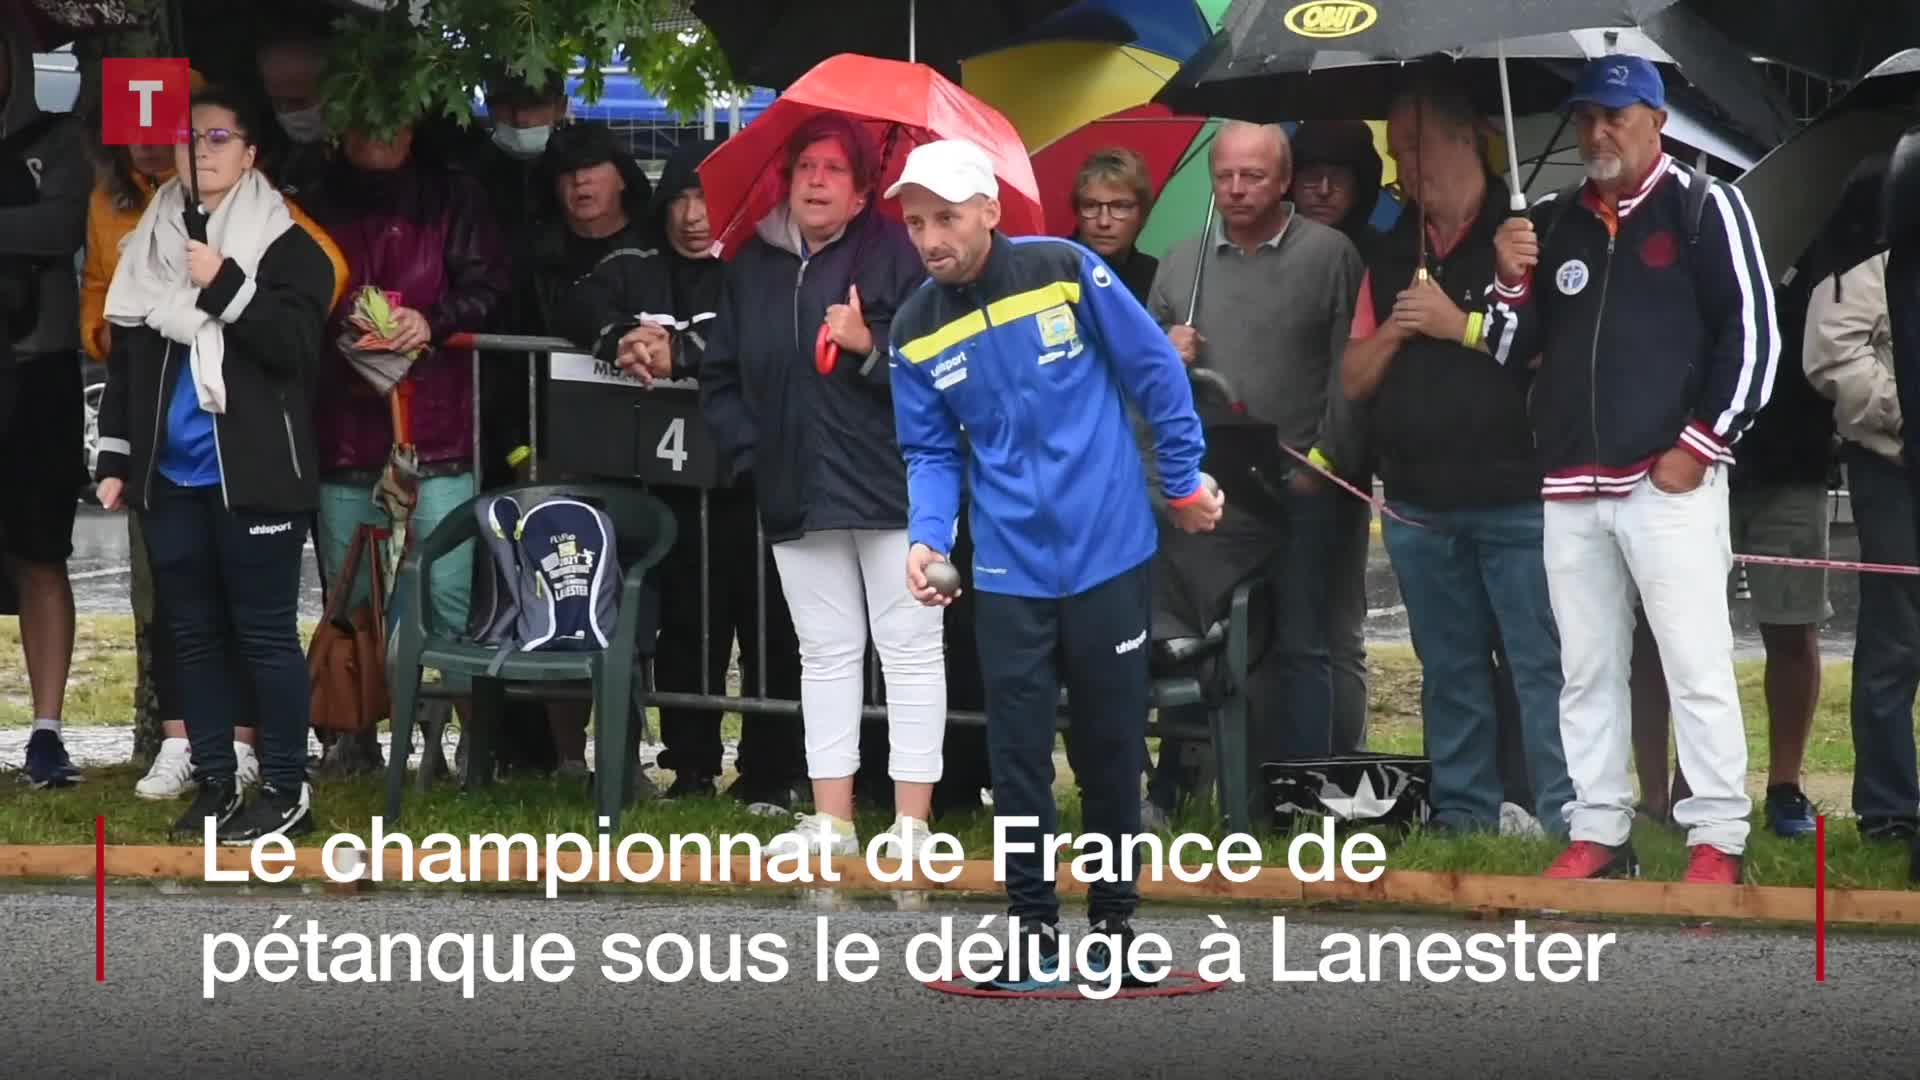 Le championnat de France de pétanque sous le déluge à Lanester (Le Télégramme)